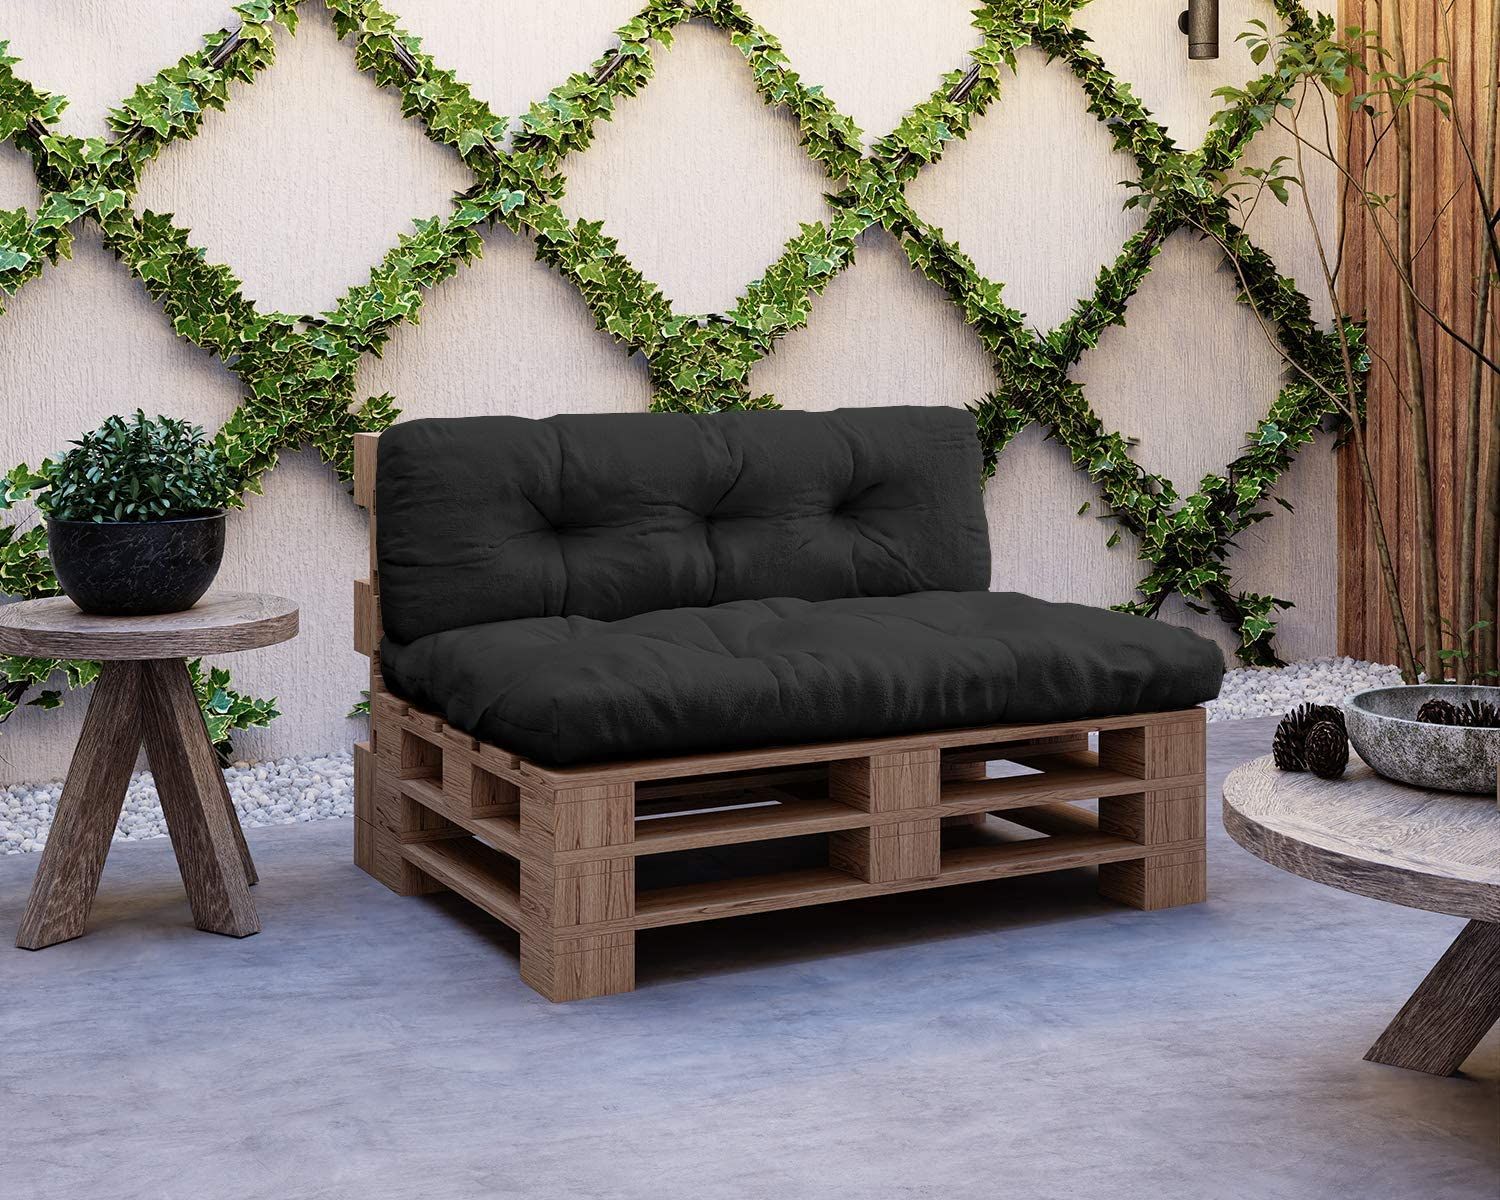 Cuscino per mobili pallet SEDUTA Carbon divano arredamento esterno design  Bizzotto cuscini per bancale